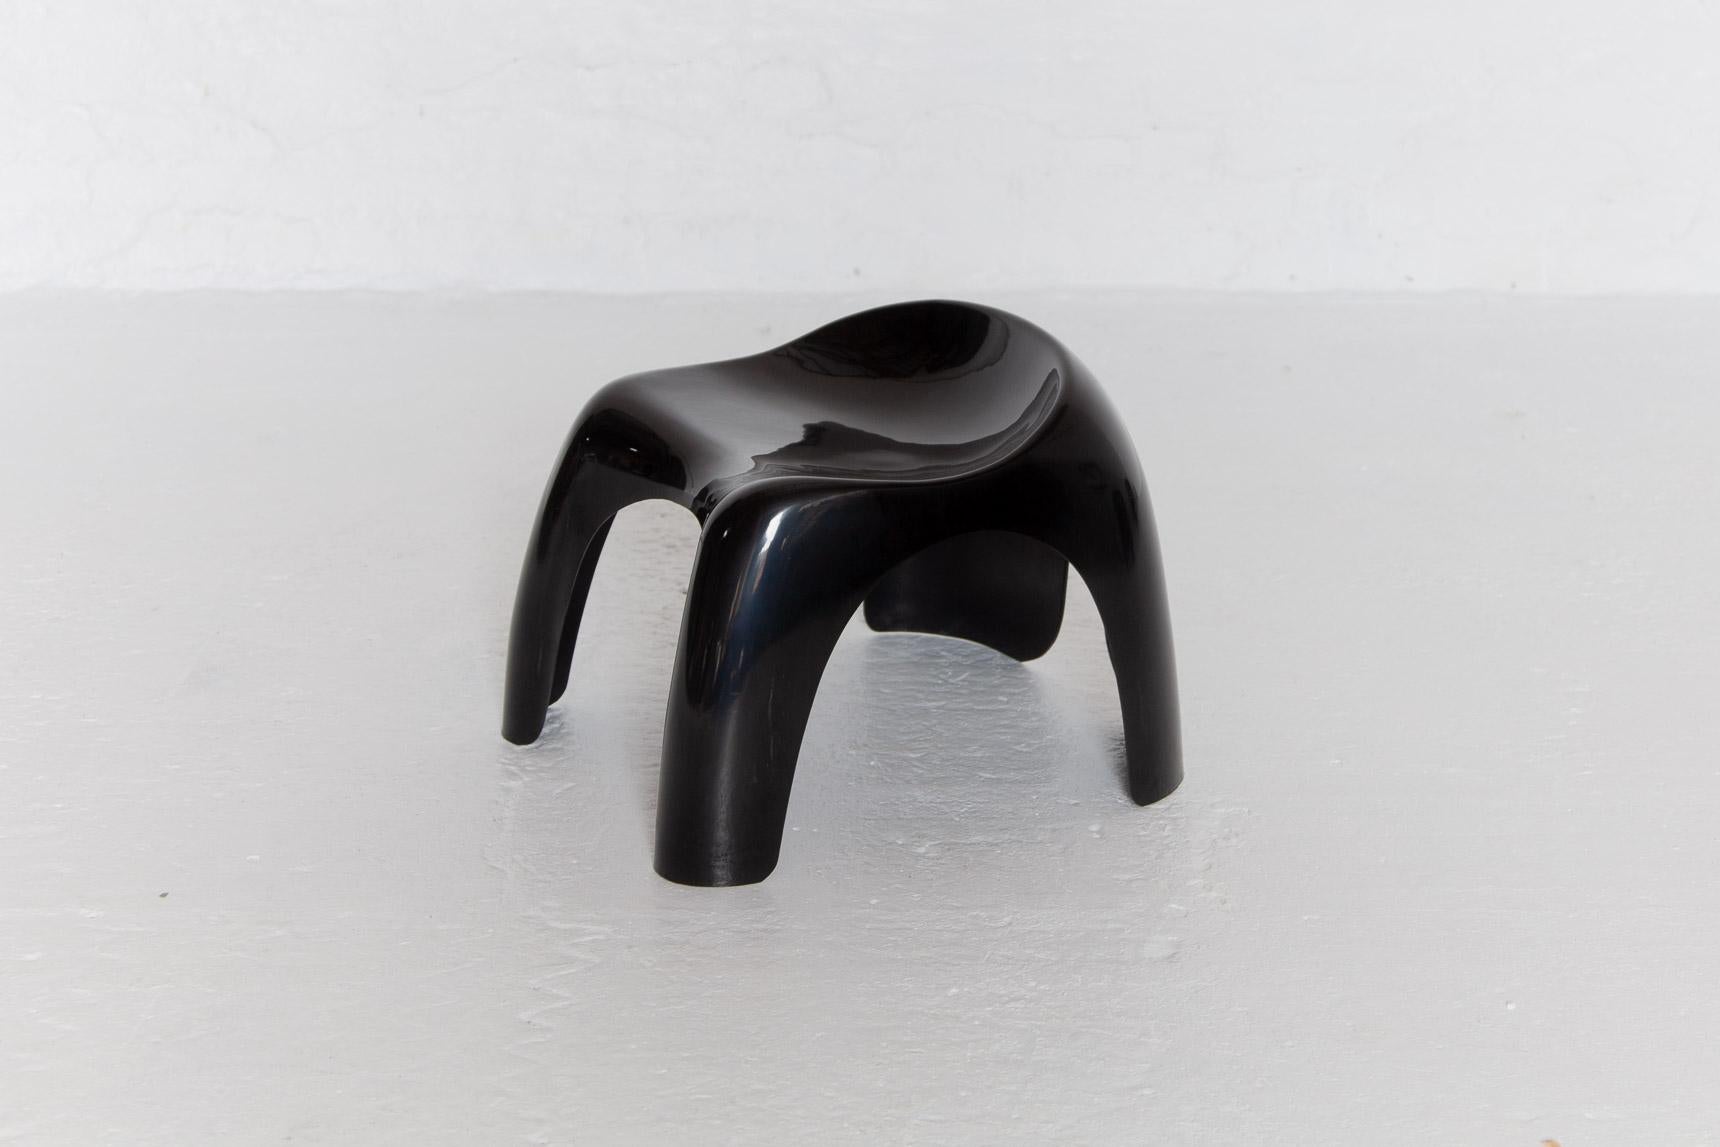 Ensemble de quatre sièges Efebo Efebino d'Artemide conçus par Stacy Duke. Tabourets d'enfant en plastique moulé noir au design très sculptural, même pour les adultes, très solides.étiquette estampillée Artemide,Italie.

Dimensions : Hauteur : 32